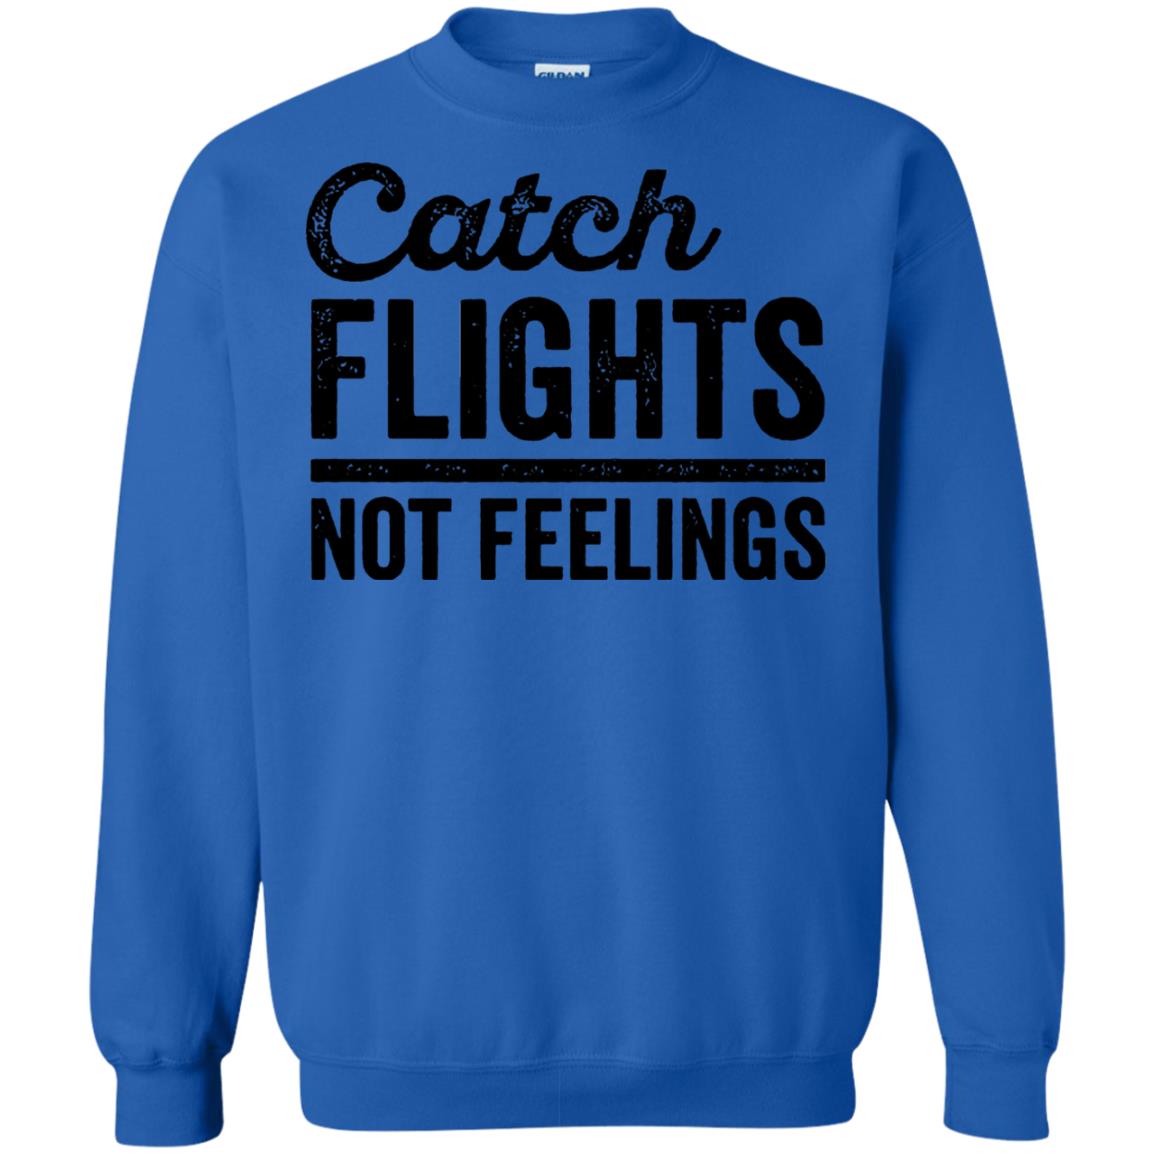 catch flights not feelings sweatshirt - royal blue